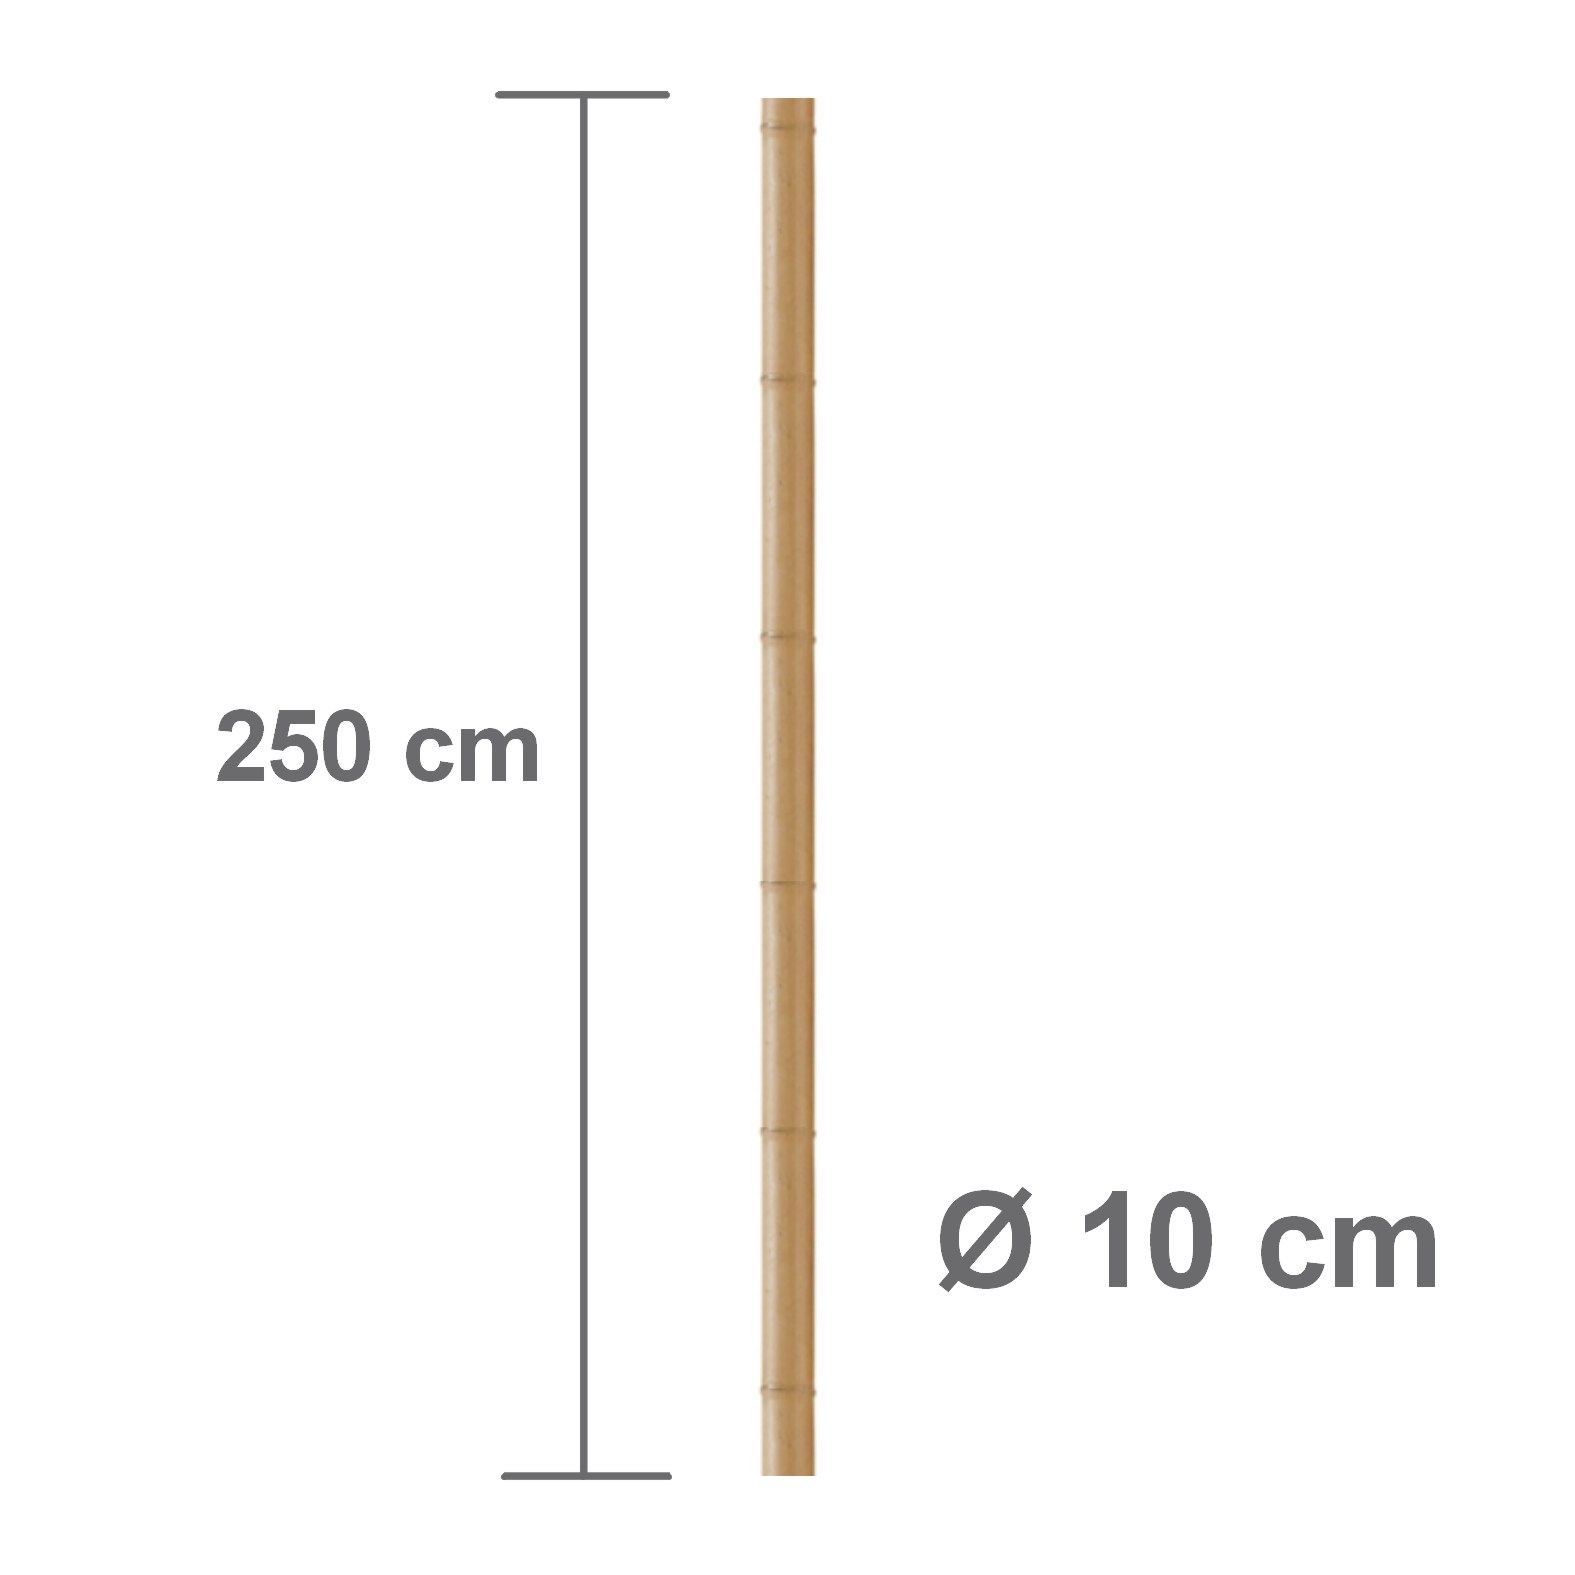 [B250] 4 Poteau en BAMBOO (Ø 10 cm x Ht. 2,50m)